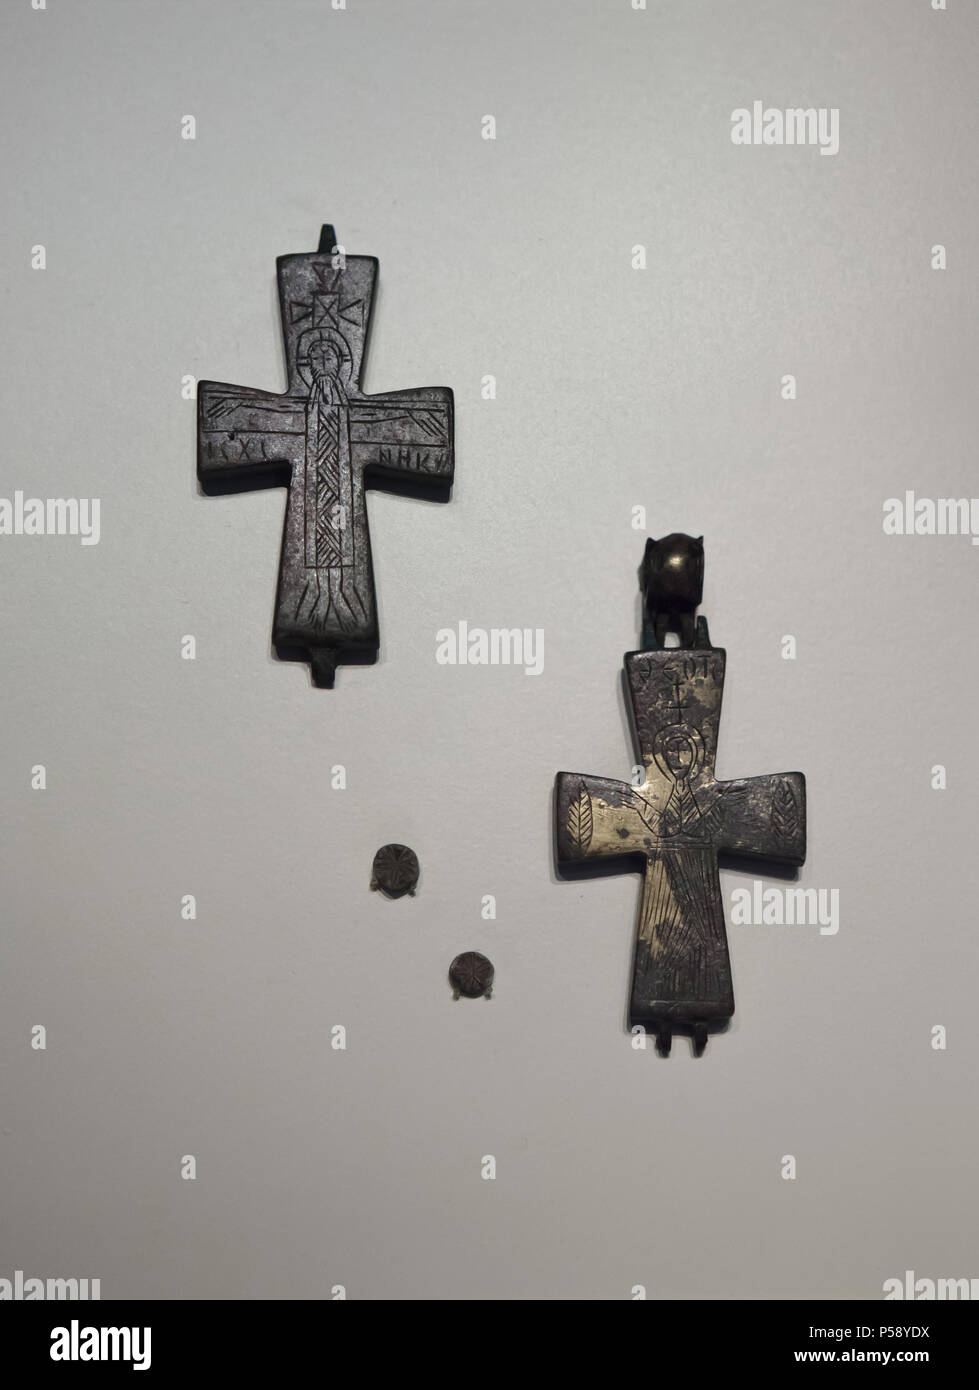 Bronce (reliquia bizantina enkolpions cuadro formado como un crucifijo) en exhibición en el Museo Arqueológico Nacional (Museo Arqueológico Nacional) en Madrid, España. Foto de stock